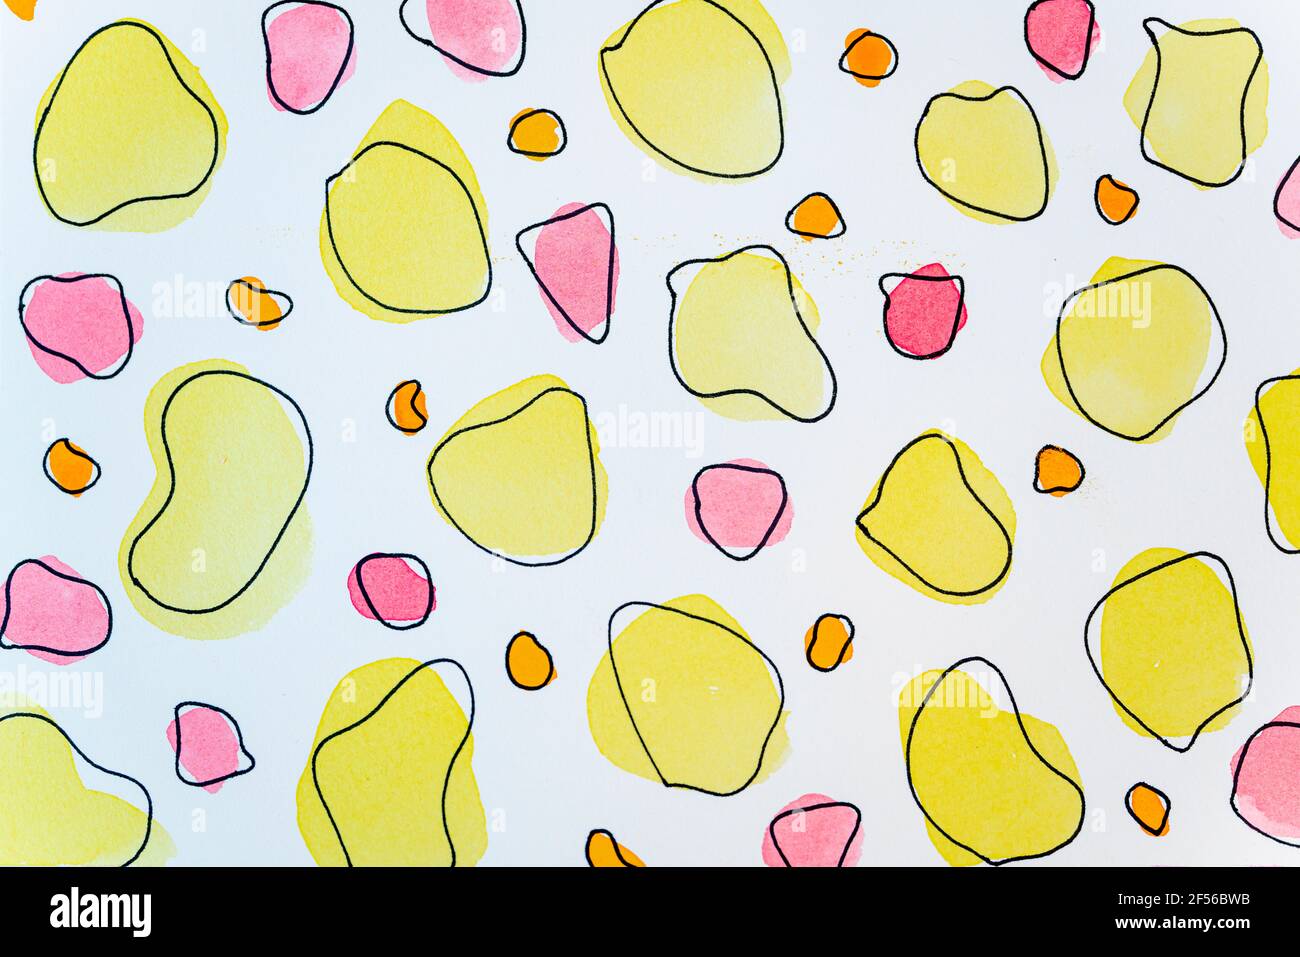 Aquarelle abstraite jaune et rose sur papier blanc Banque D'Images